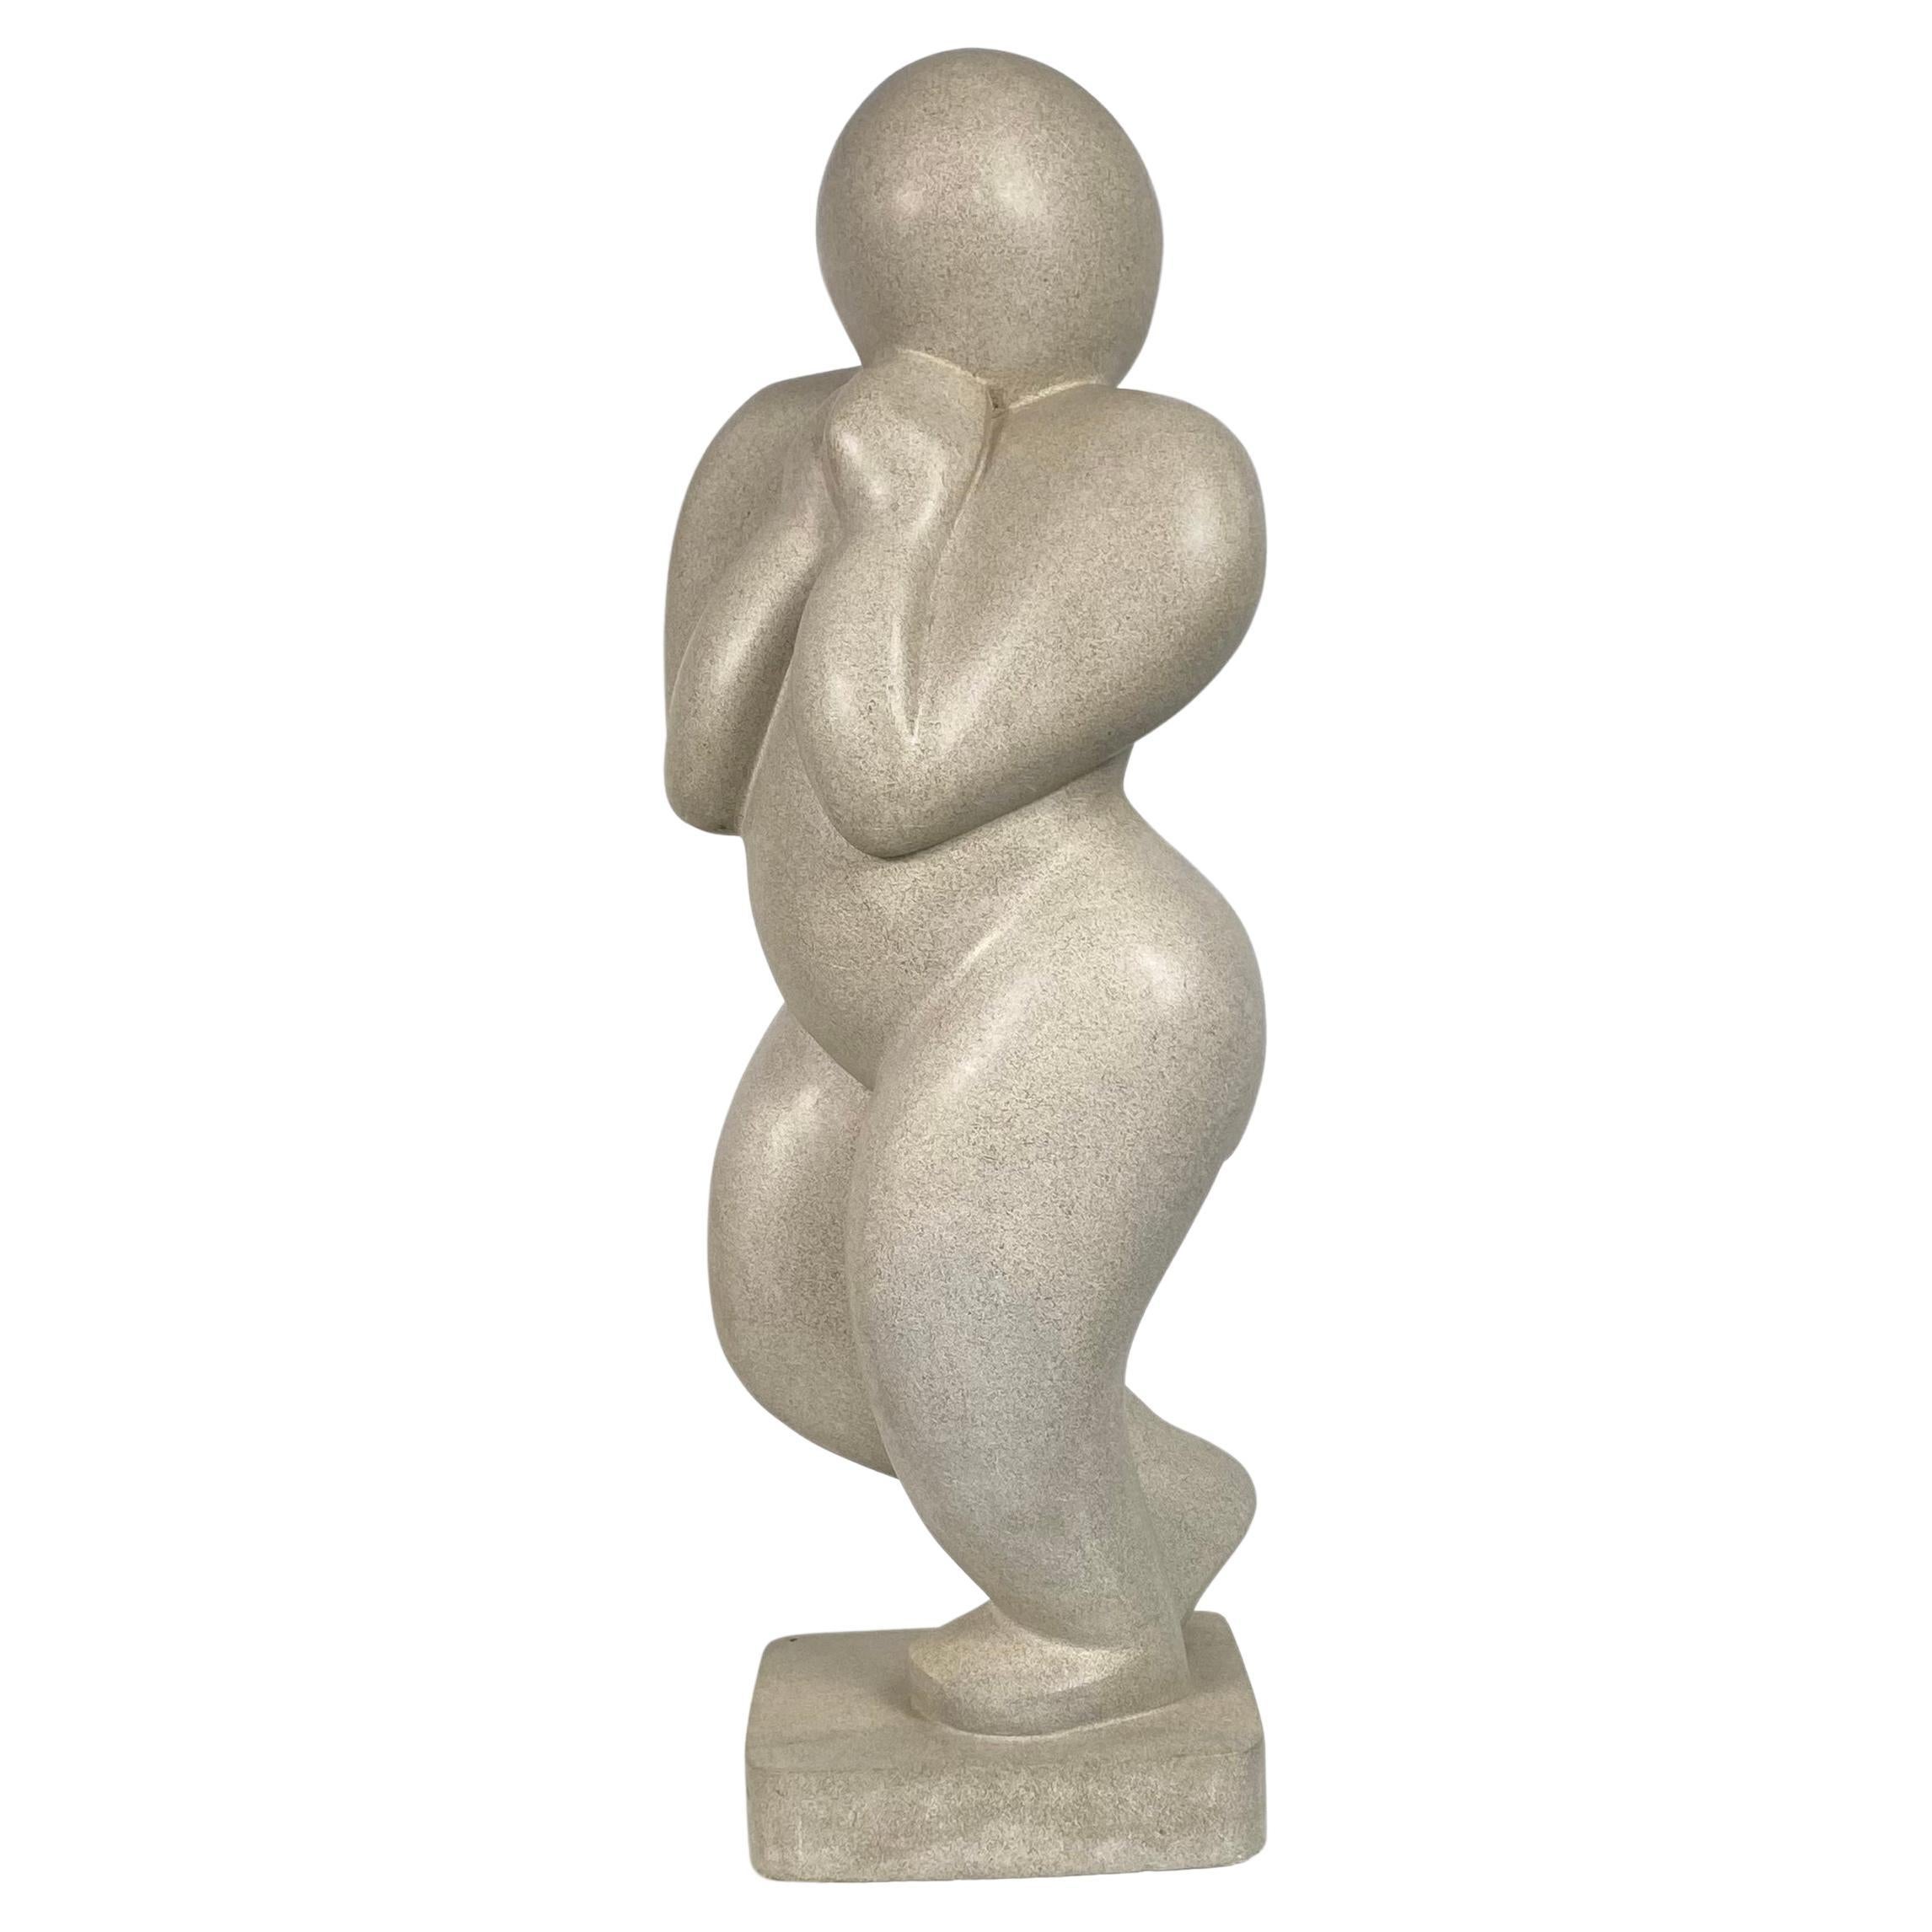 Figurative Skulptur aus geschnitztem Stein im modernistischen Stil..W.P.A. Style........signiert M E F '01